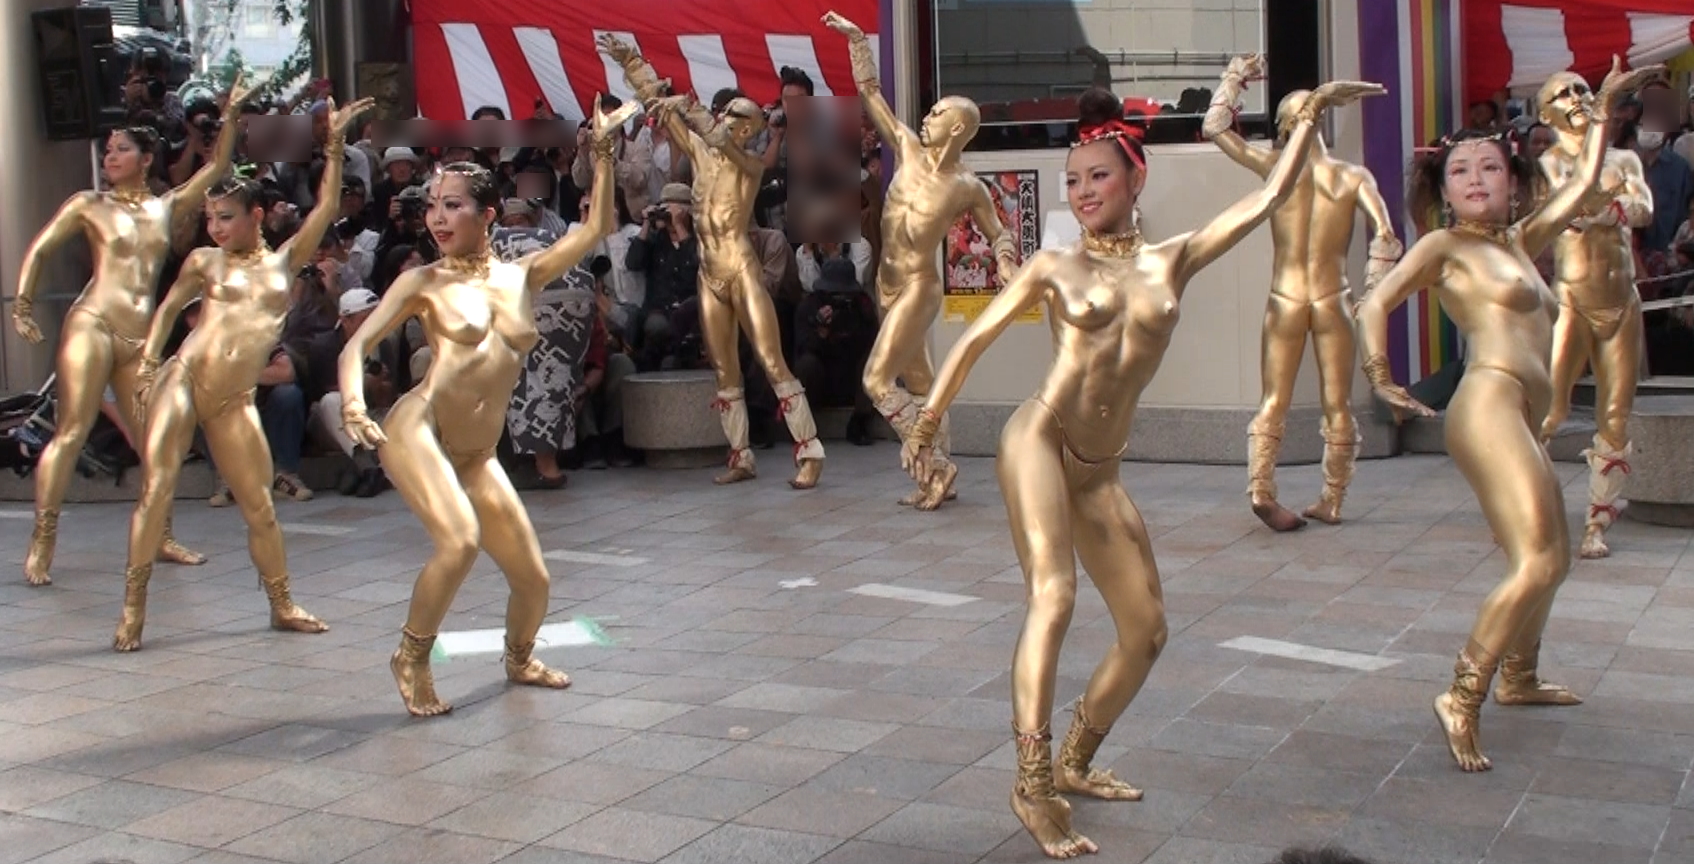 Nude line dancers